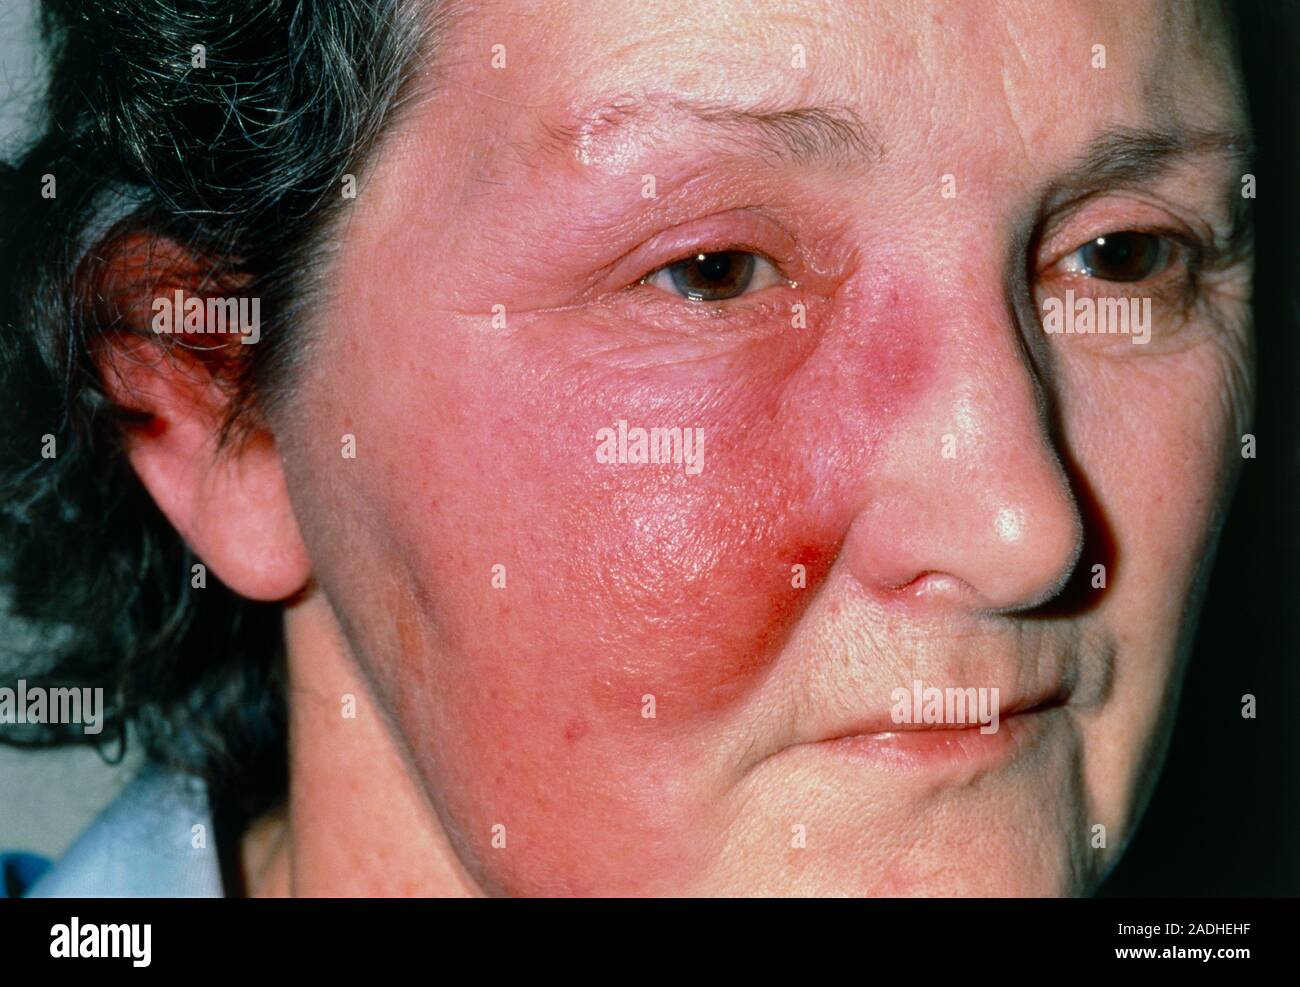 Erysipelas sul viso. Close-up di gonfi e infiammazioni cutanee sulla  guancia destra di una donna. Questo è dovuto alla erisipela, una infezione  acuta della pelle & s Foto stock - Alamy